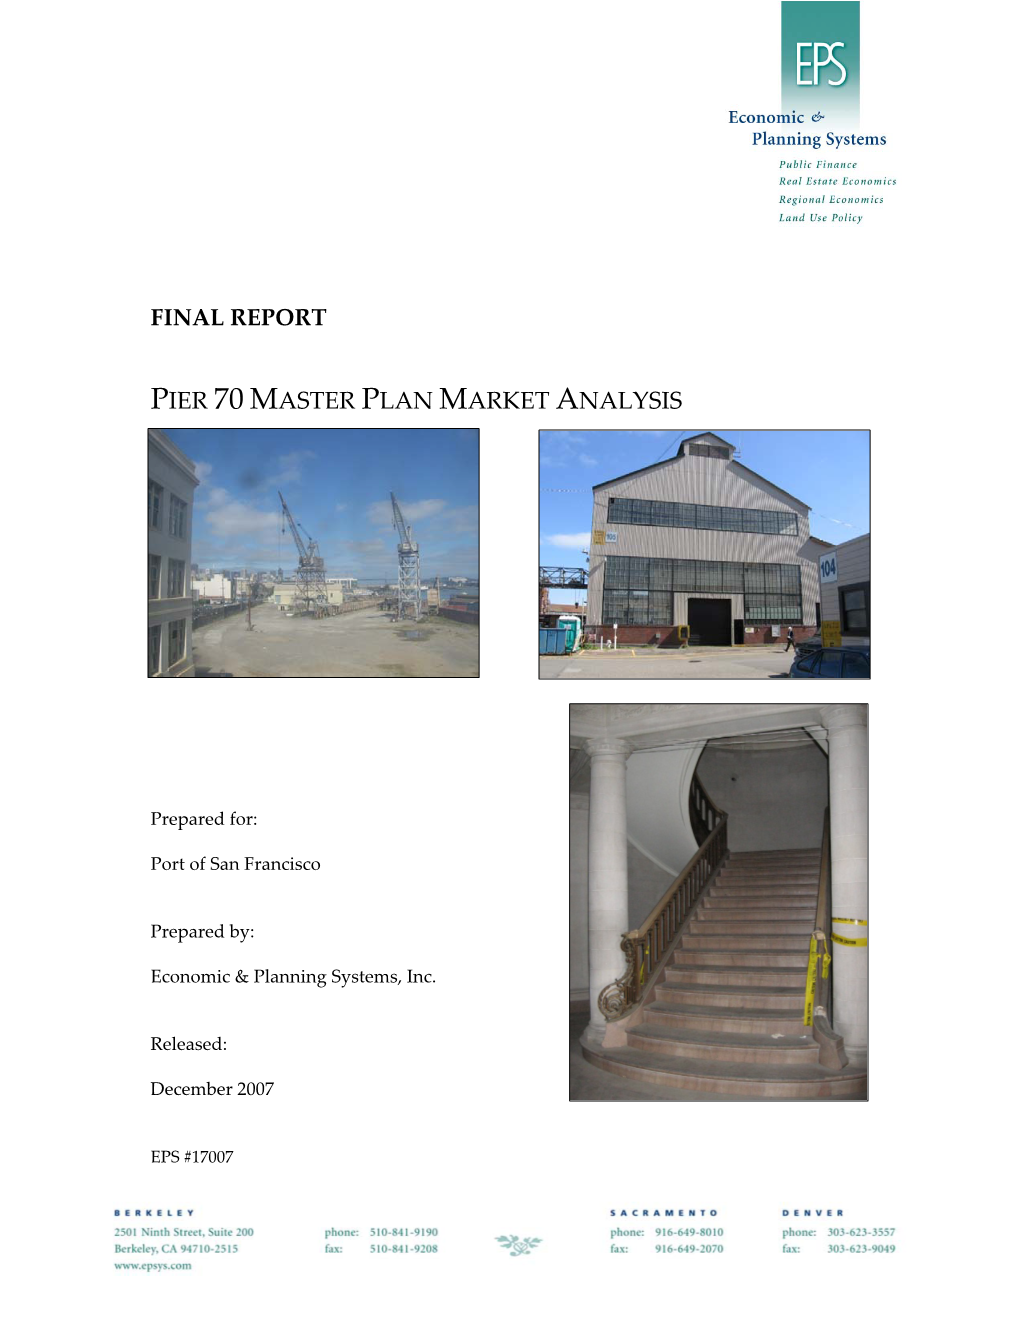 Pier 70 Master Plan Market Analysis